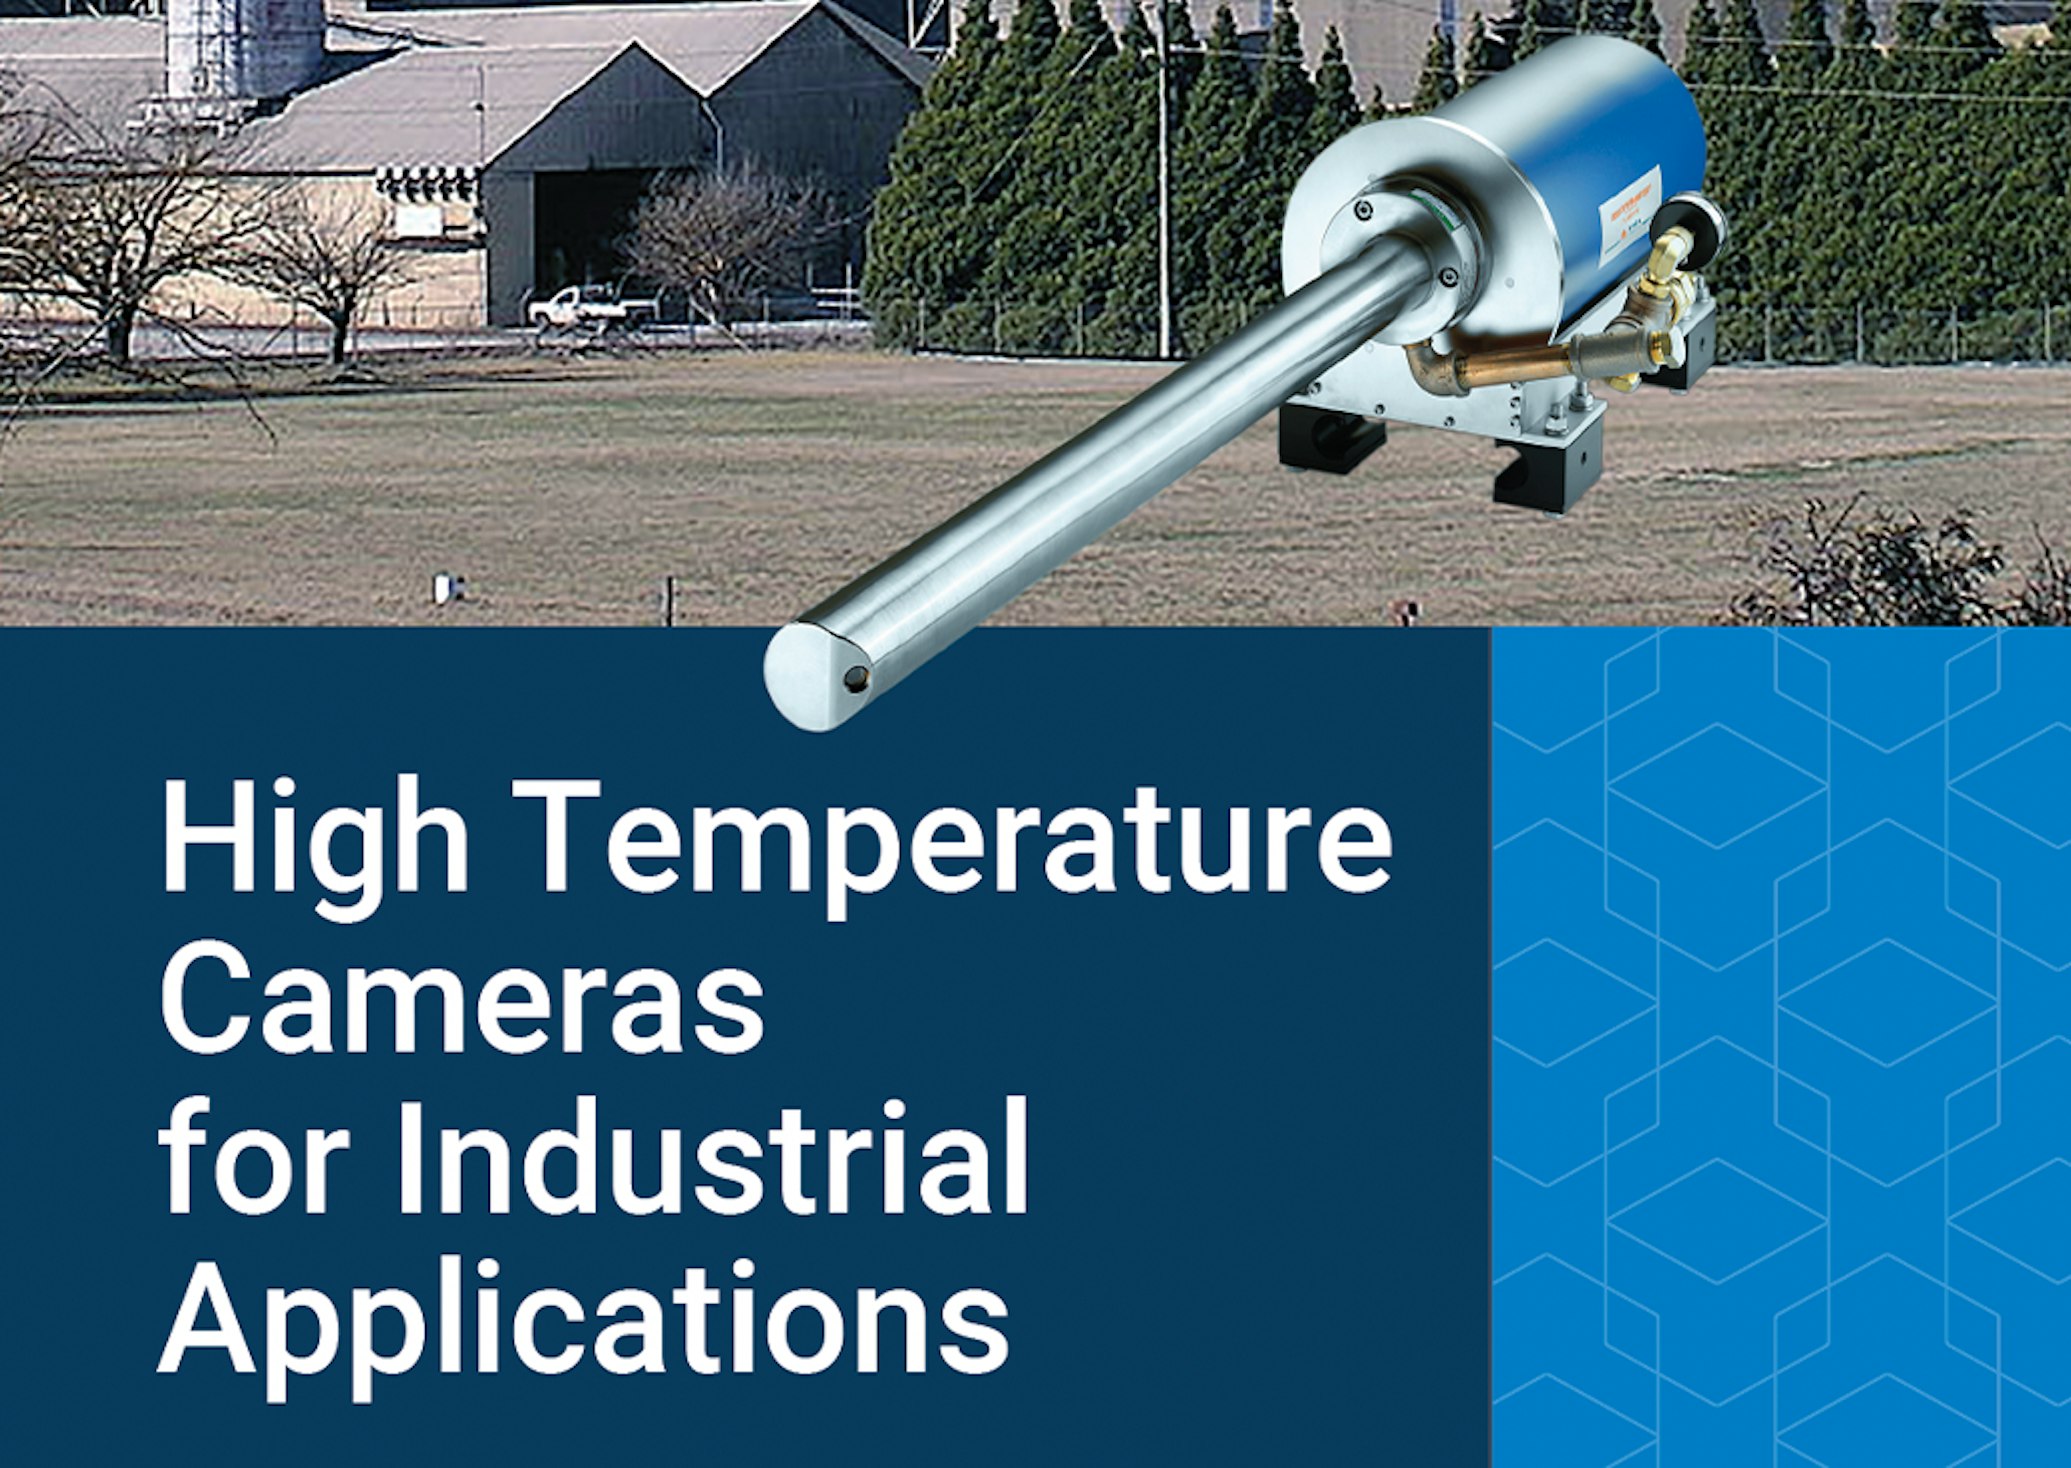 High temperature cameras brochure